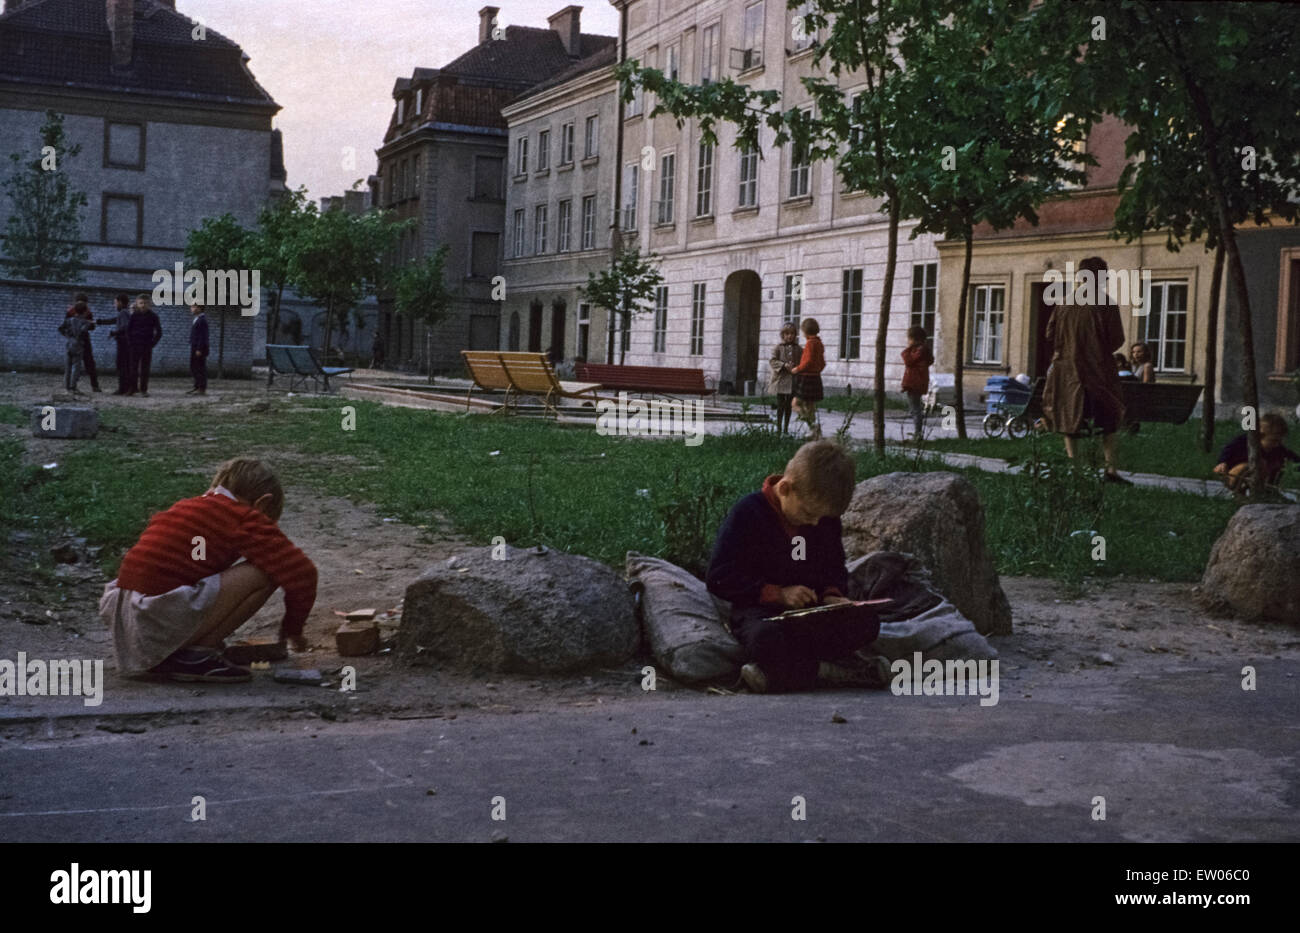 Spielende Kinder in der Altstadt von Warschau in den 1960er Jahren Spielende Kinder in der Altstadt von Warschau in Den Sechzigern Stockfoto